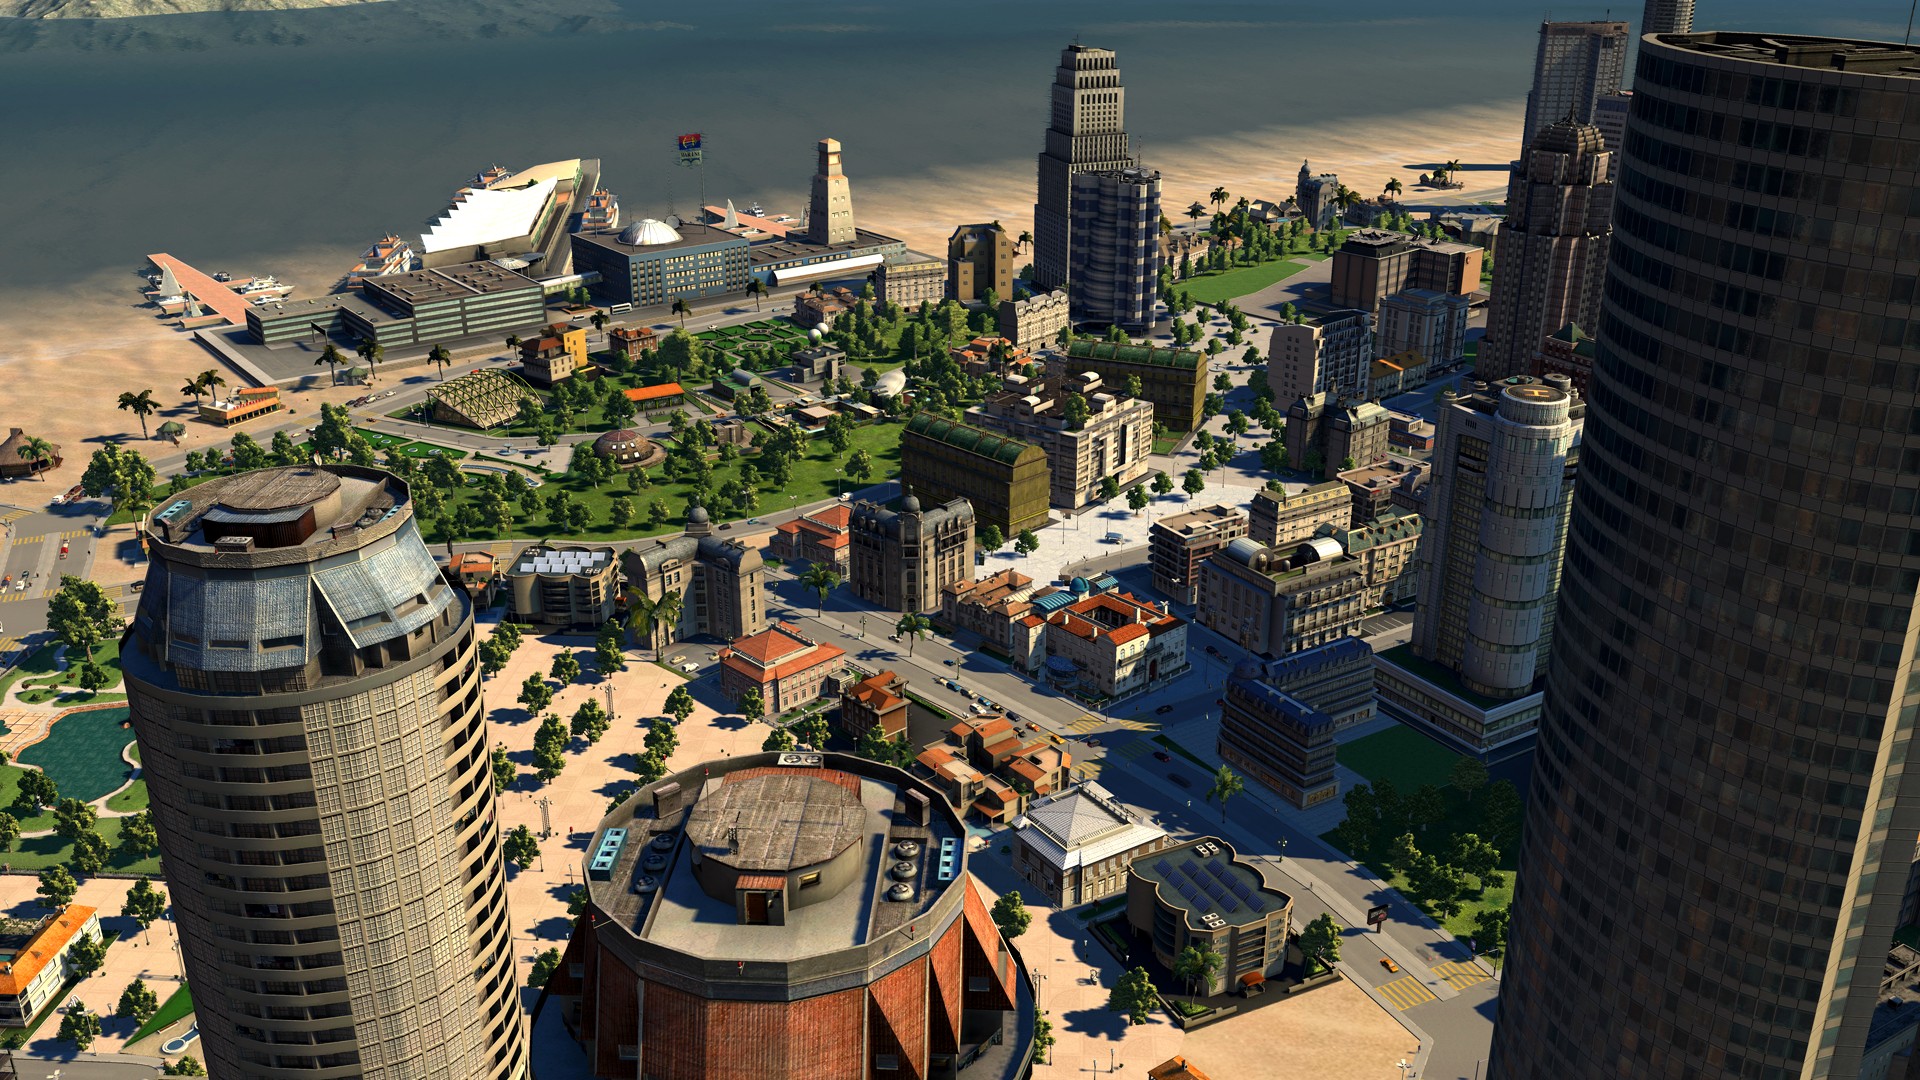 Игра "Cities XXL" - скриншоты, новости, дата выхода, системные тр...